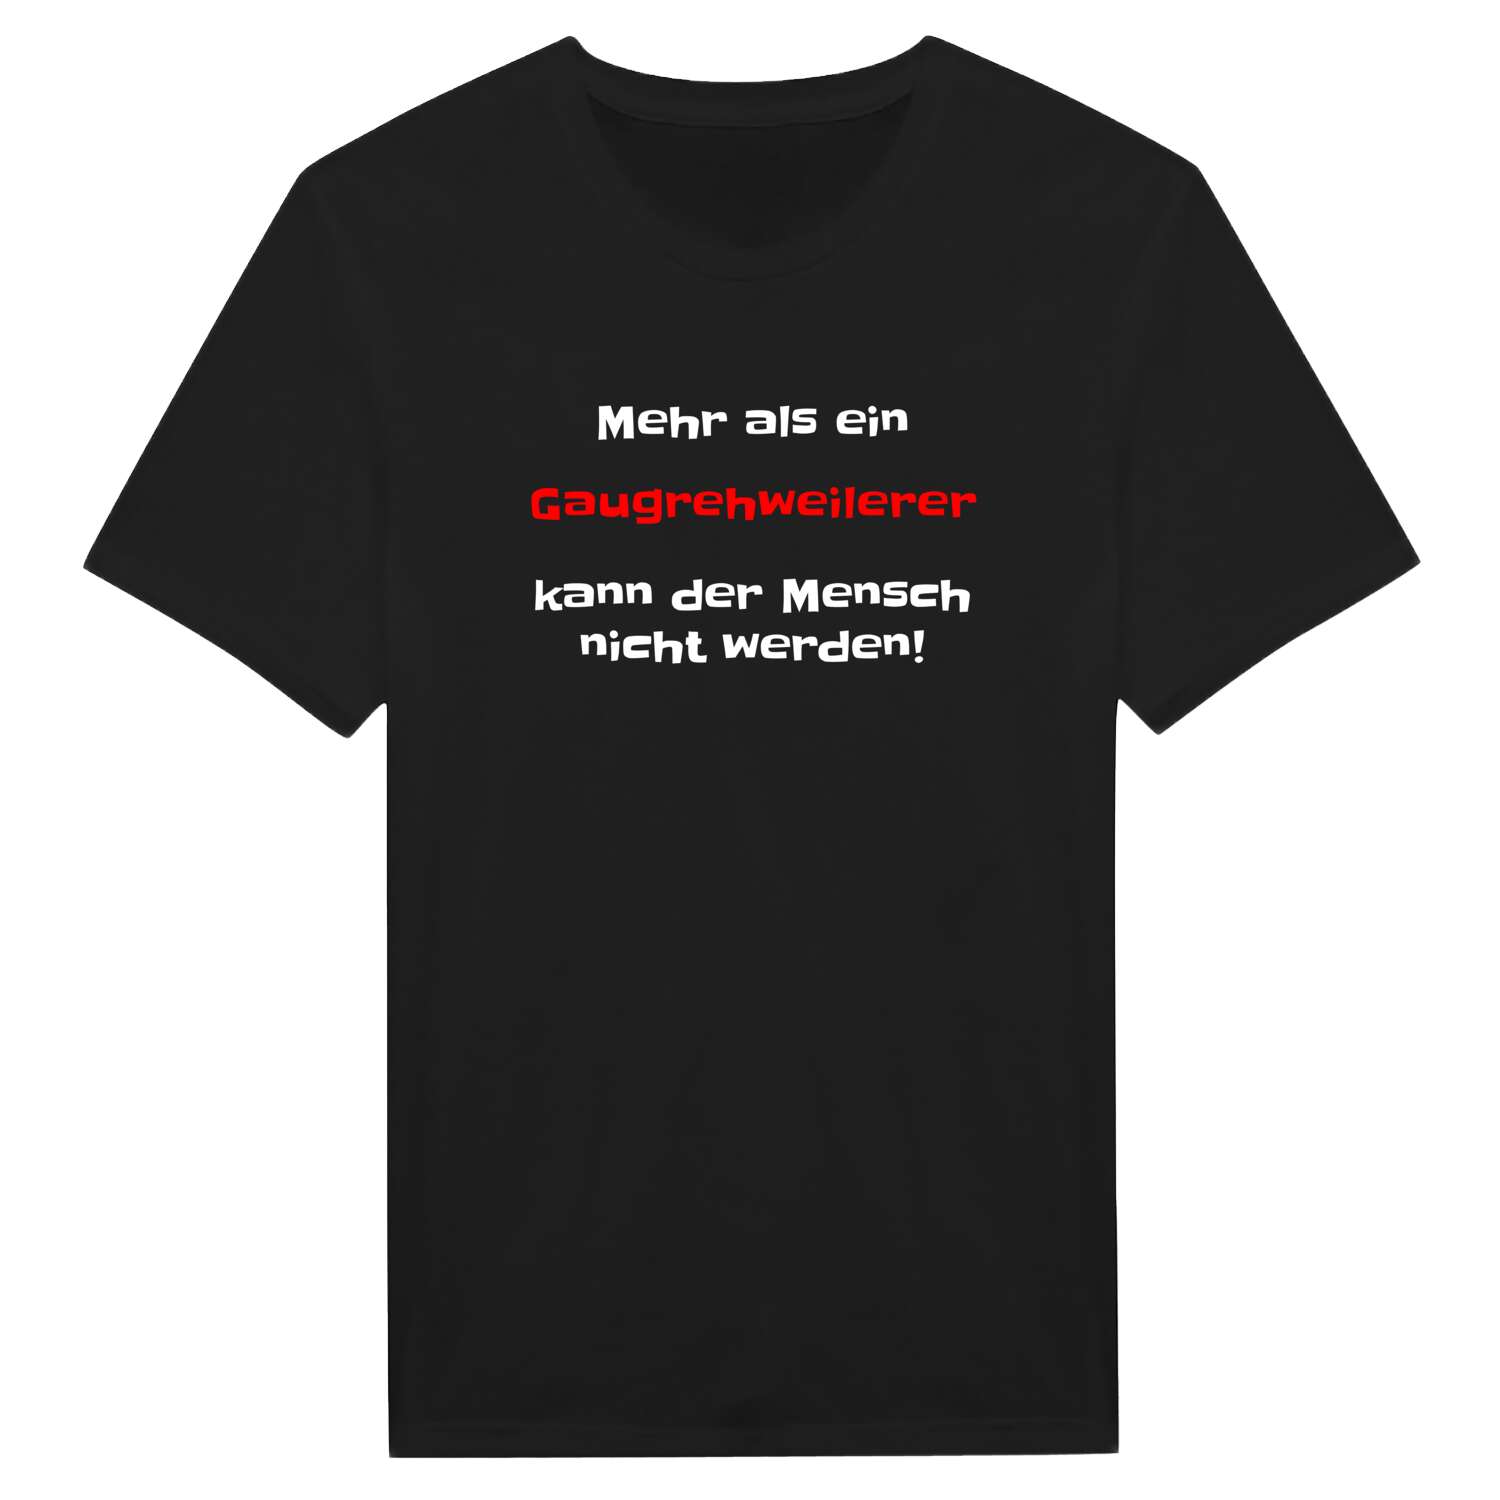 Gaugrehweiler T-Shirt »Mehr als ein«